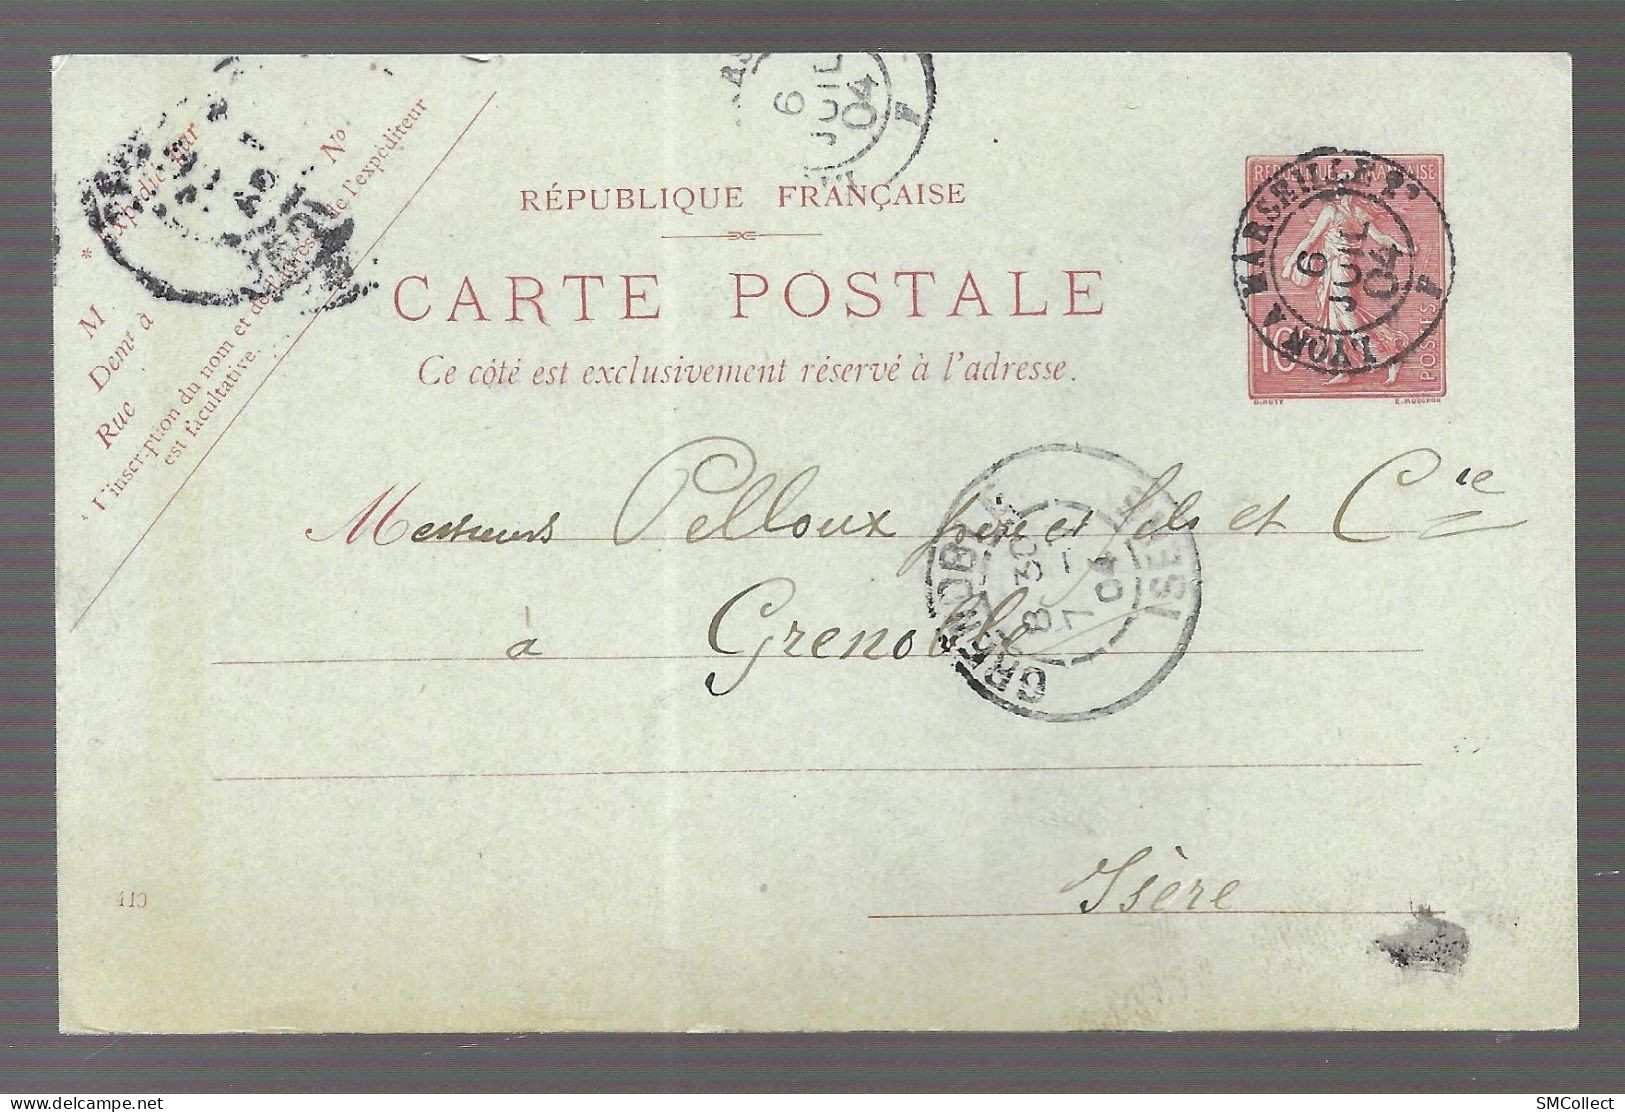 Cachet Convoyeur Rond Lyon à Marseille, De Juillet 1904 Sur Entier Postal Semeuse Lignée 10 Centimes Rouge (13682) - Railway Post